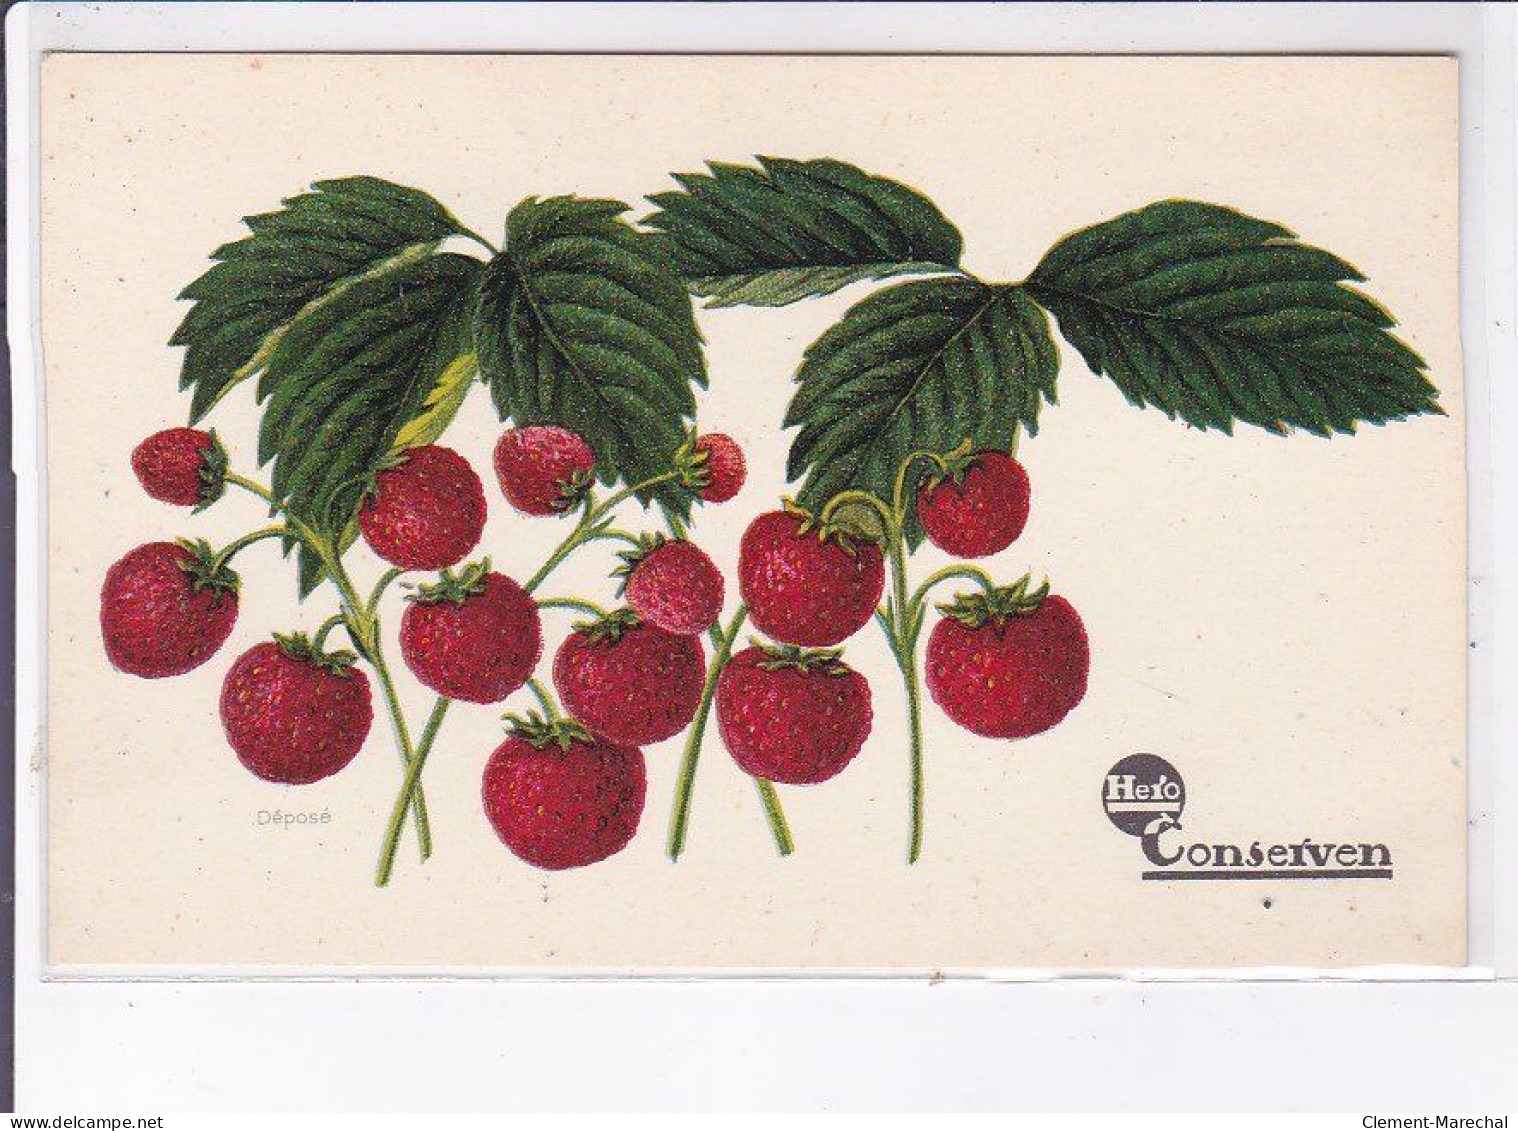 PUBLICITE : série de 12 cartes postales pour les conserves HERO(fruits - légumes) - très bon état